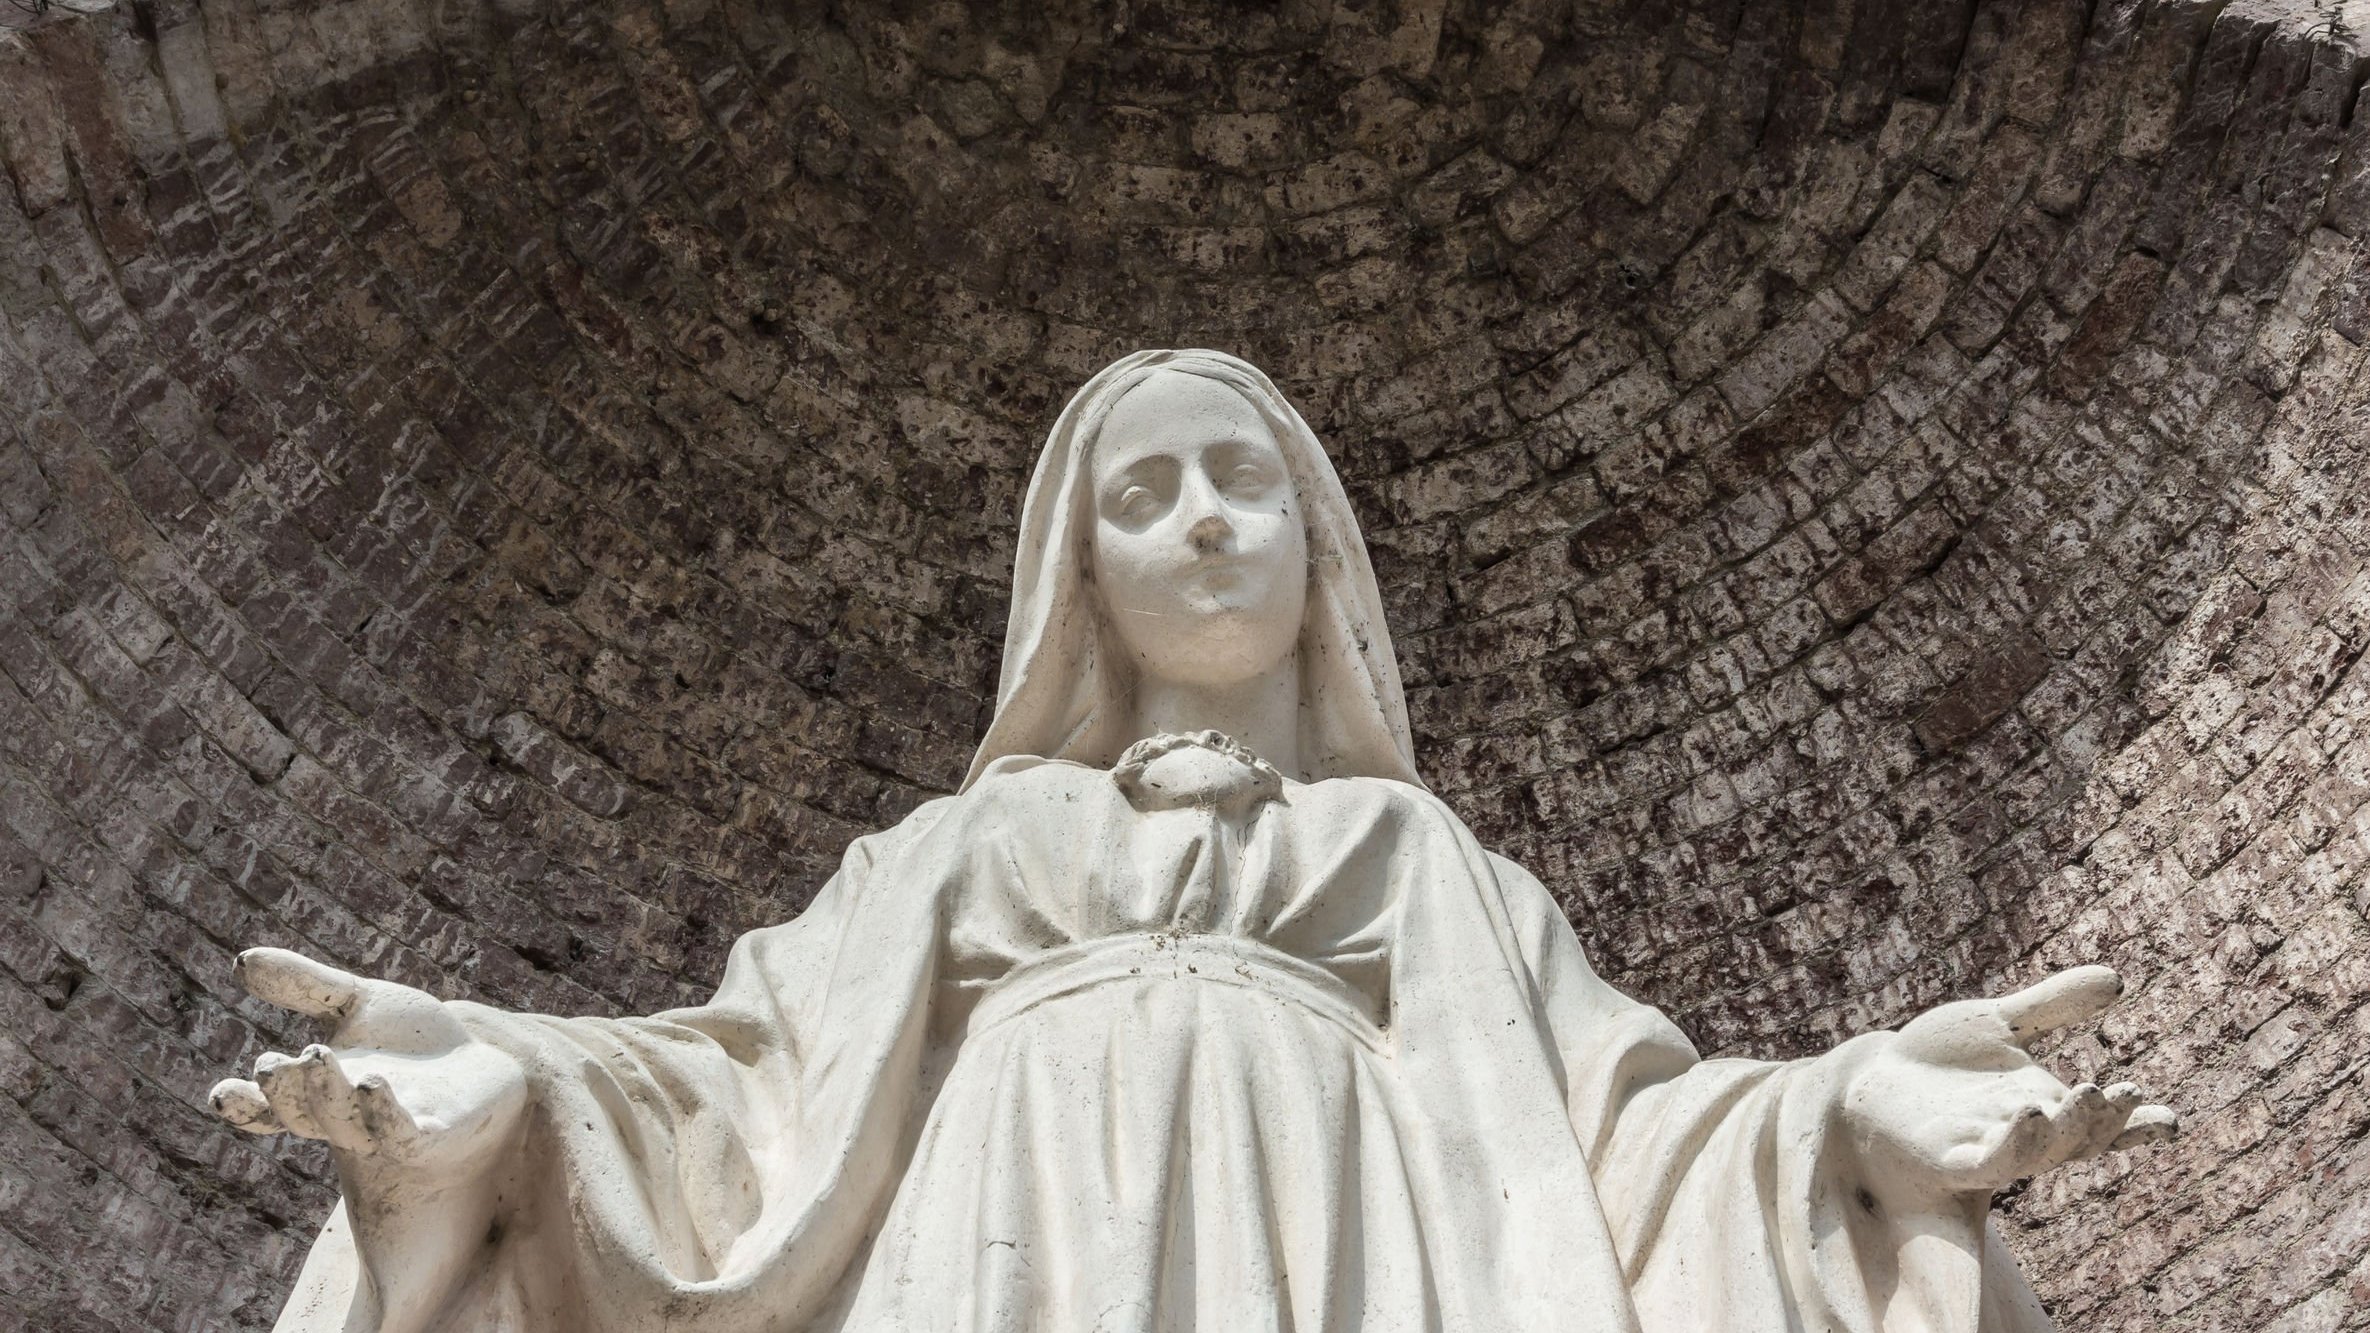 Estátua de Nossa Senhora com os braços abertos, olhando para baixo.